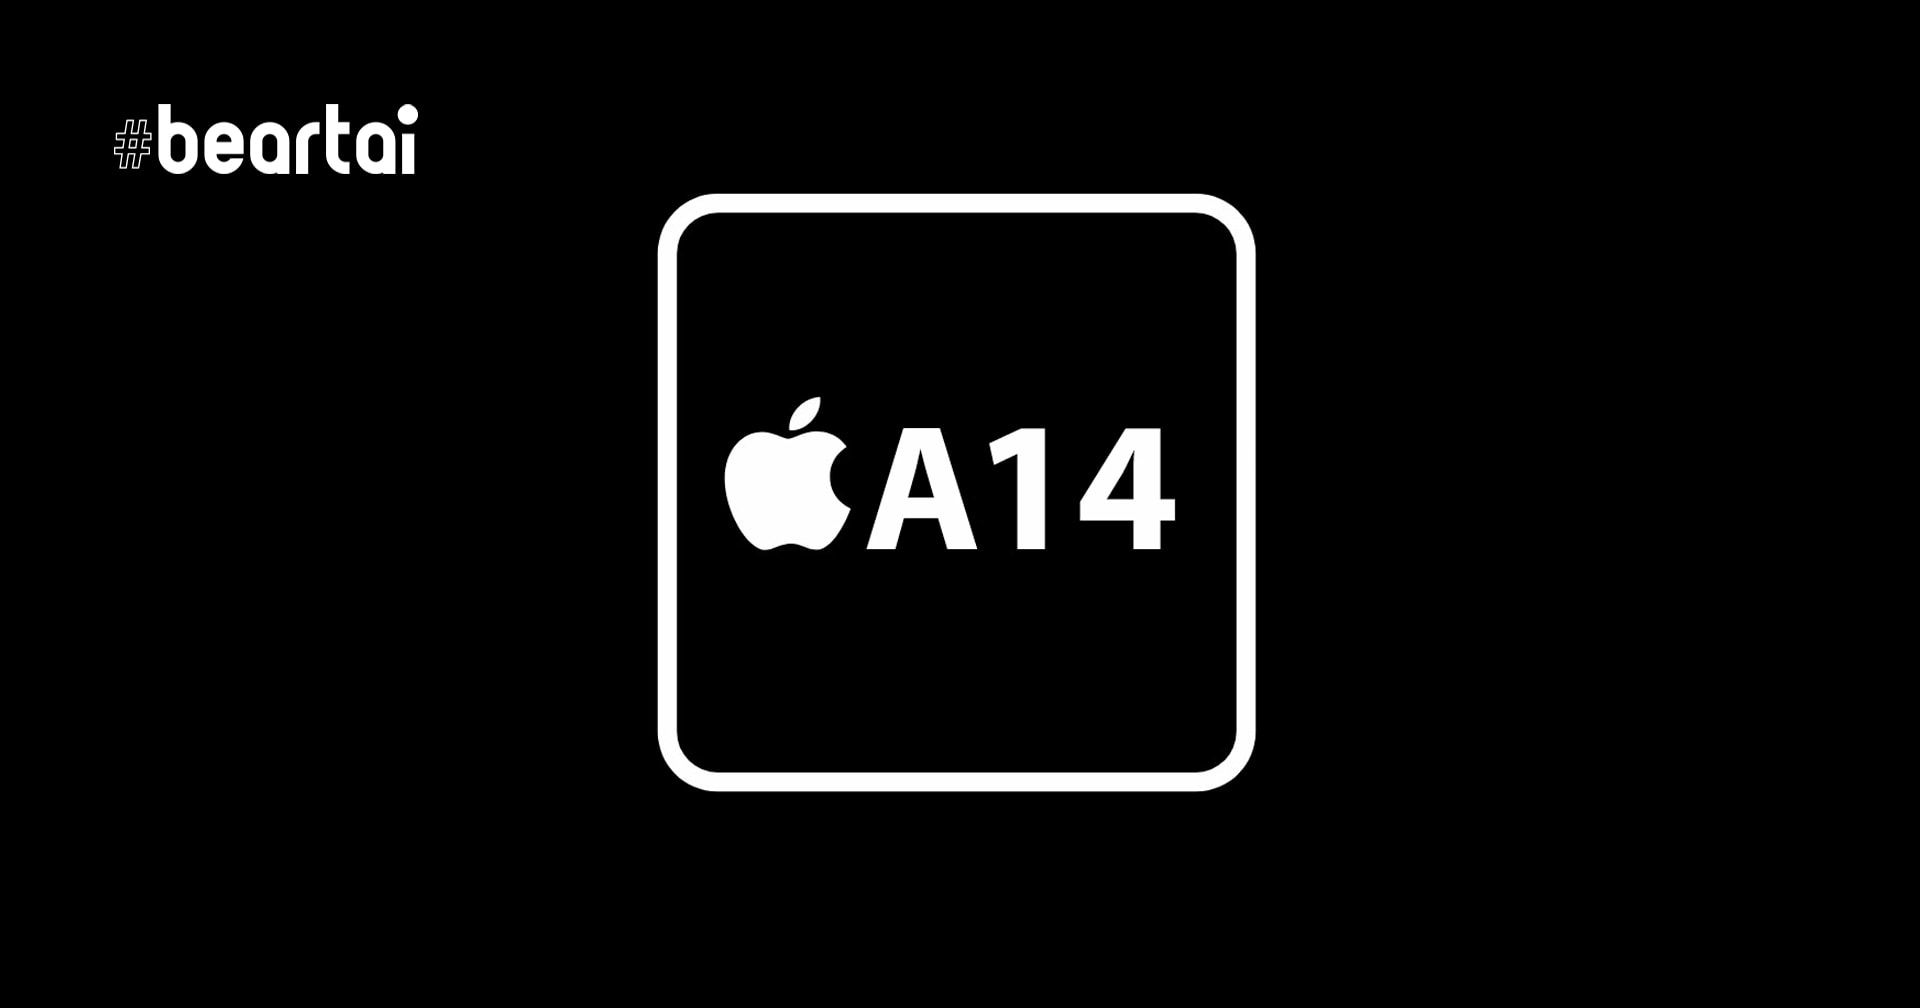 ลือ ชิป Apple A14 Bionic ที่ใช้ใน iPhone 12 จะมีประสิทธิภาพสูงกว่าชิป Apple A13 ถึง 40